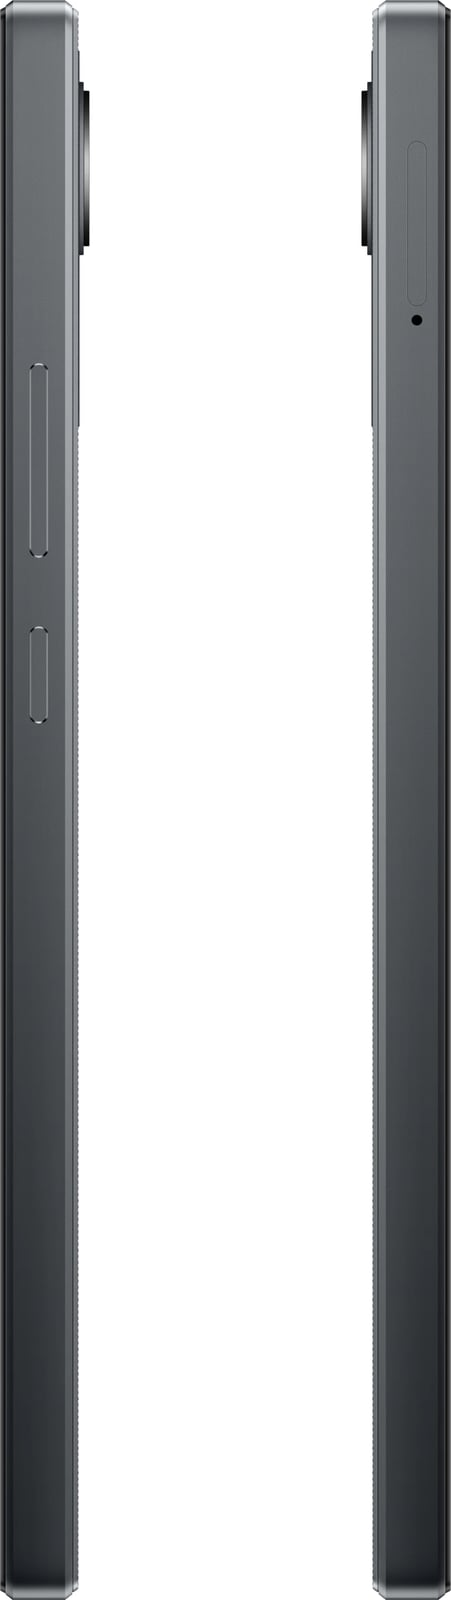 Celular Realme C30, 6.5", 3+32GB, DS, i zi 